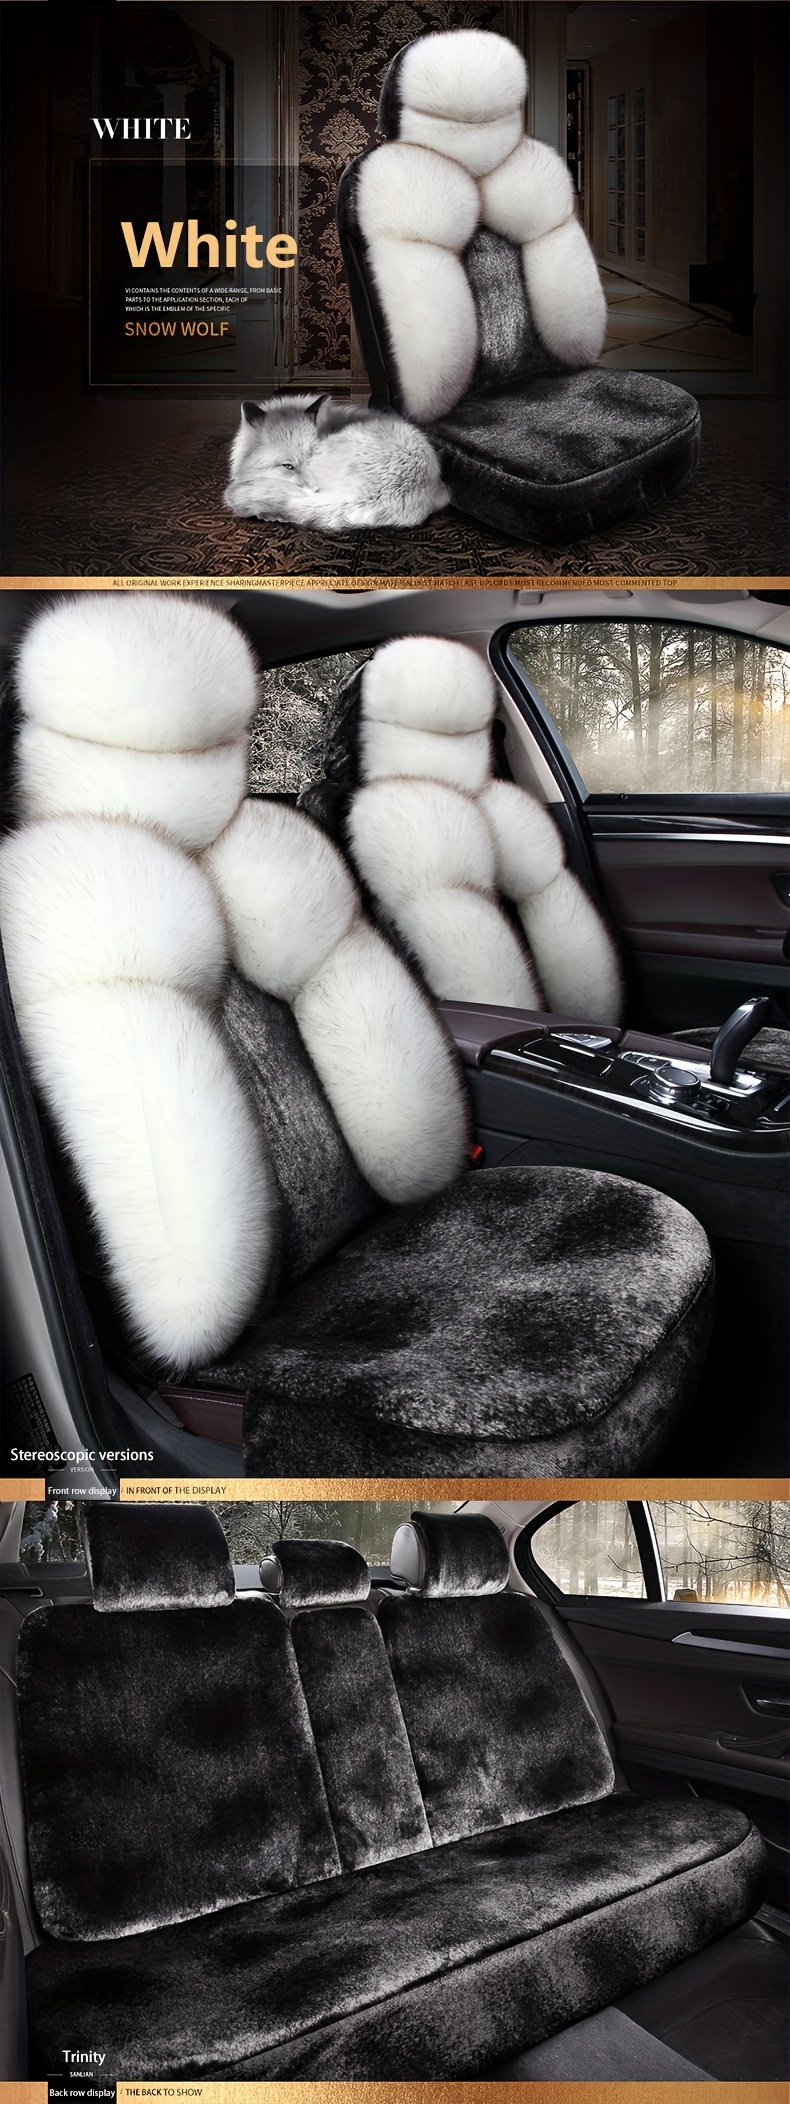 Kaufe SEAMETAL Auto-warmer Sitzbezug für den Winter, verdicktes weiches  Plüsch-Sitzkissen, Auto-Schutzpolster, universell für SUV, Pick-up, LKW,  Limousine